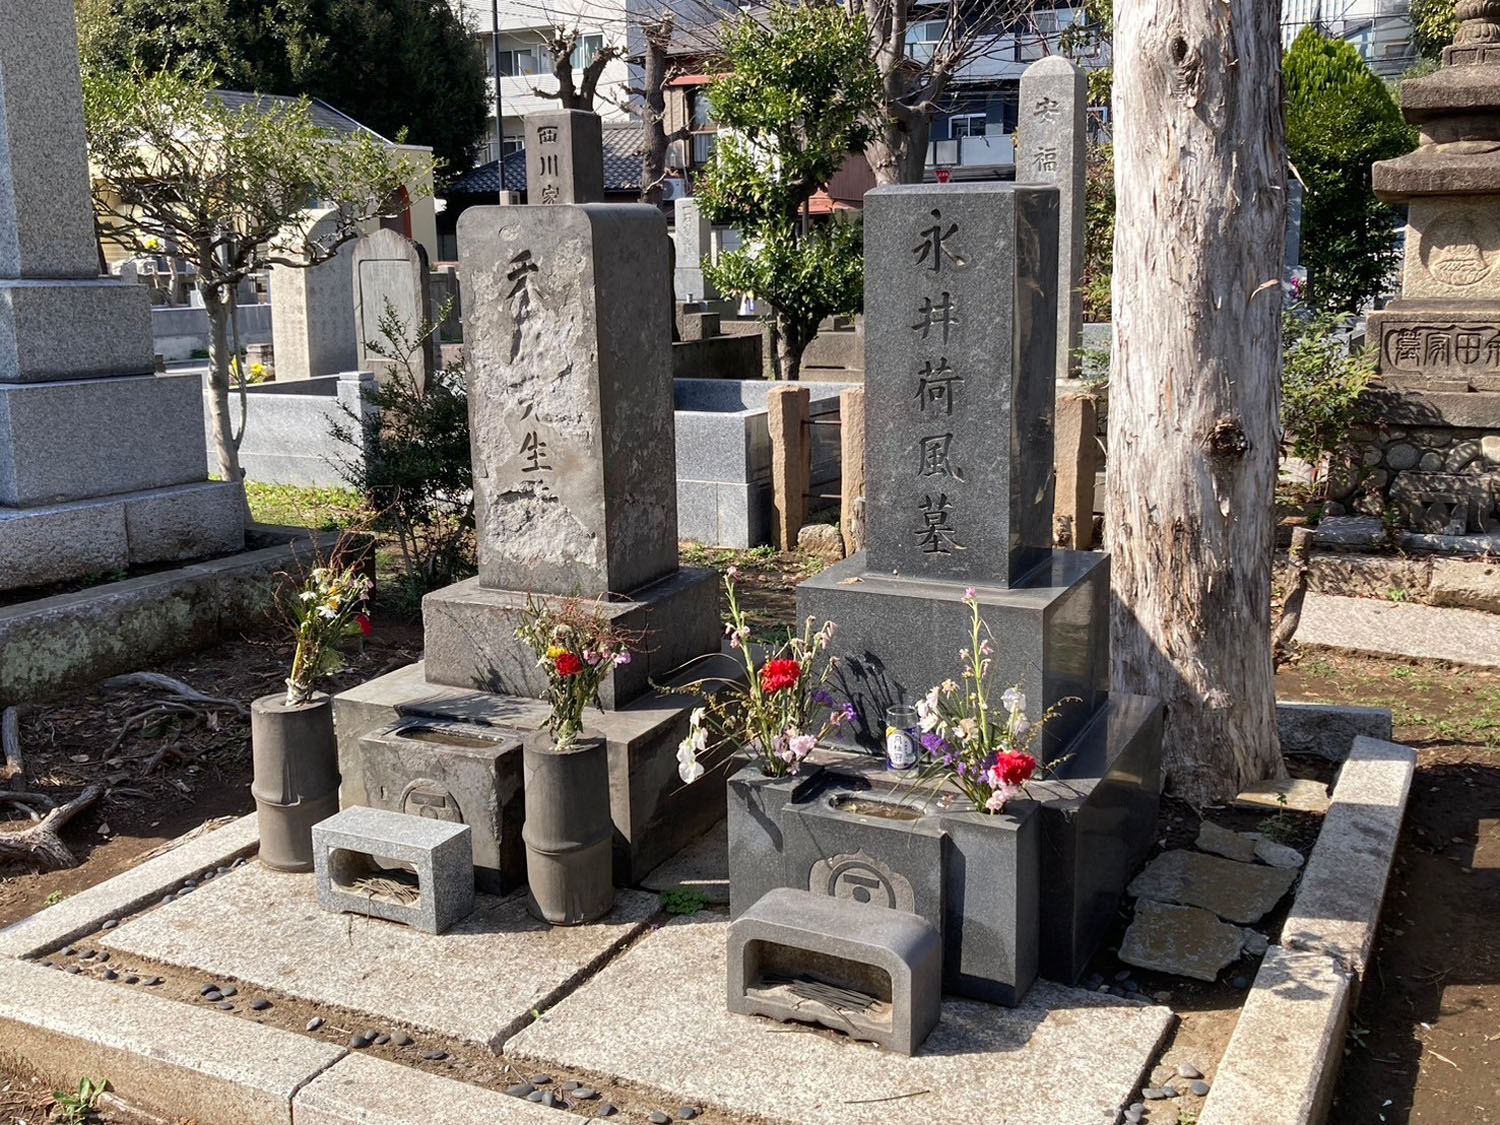 永井荷風先生のお墓。元祖「散歩の達人」の巨匠。